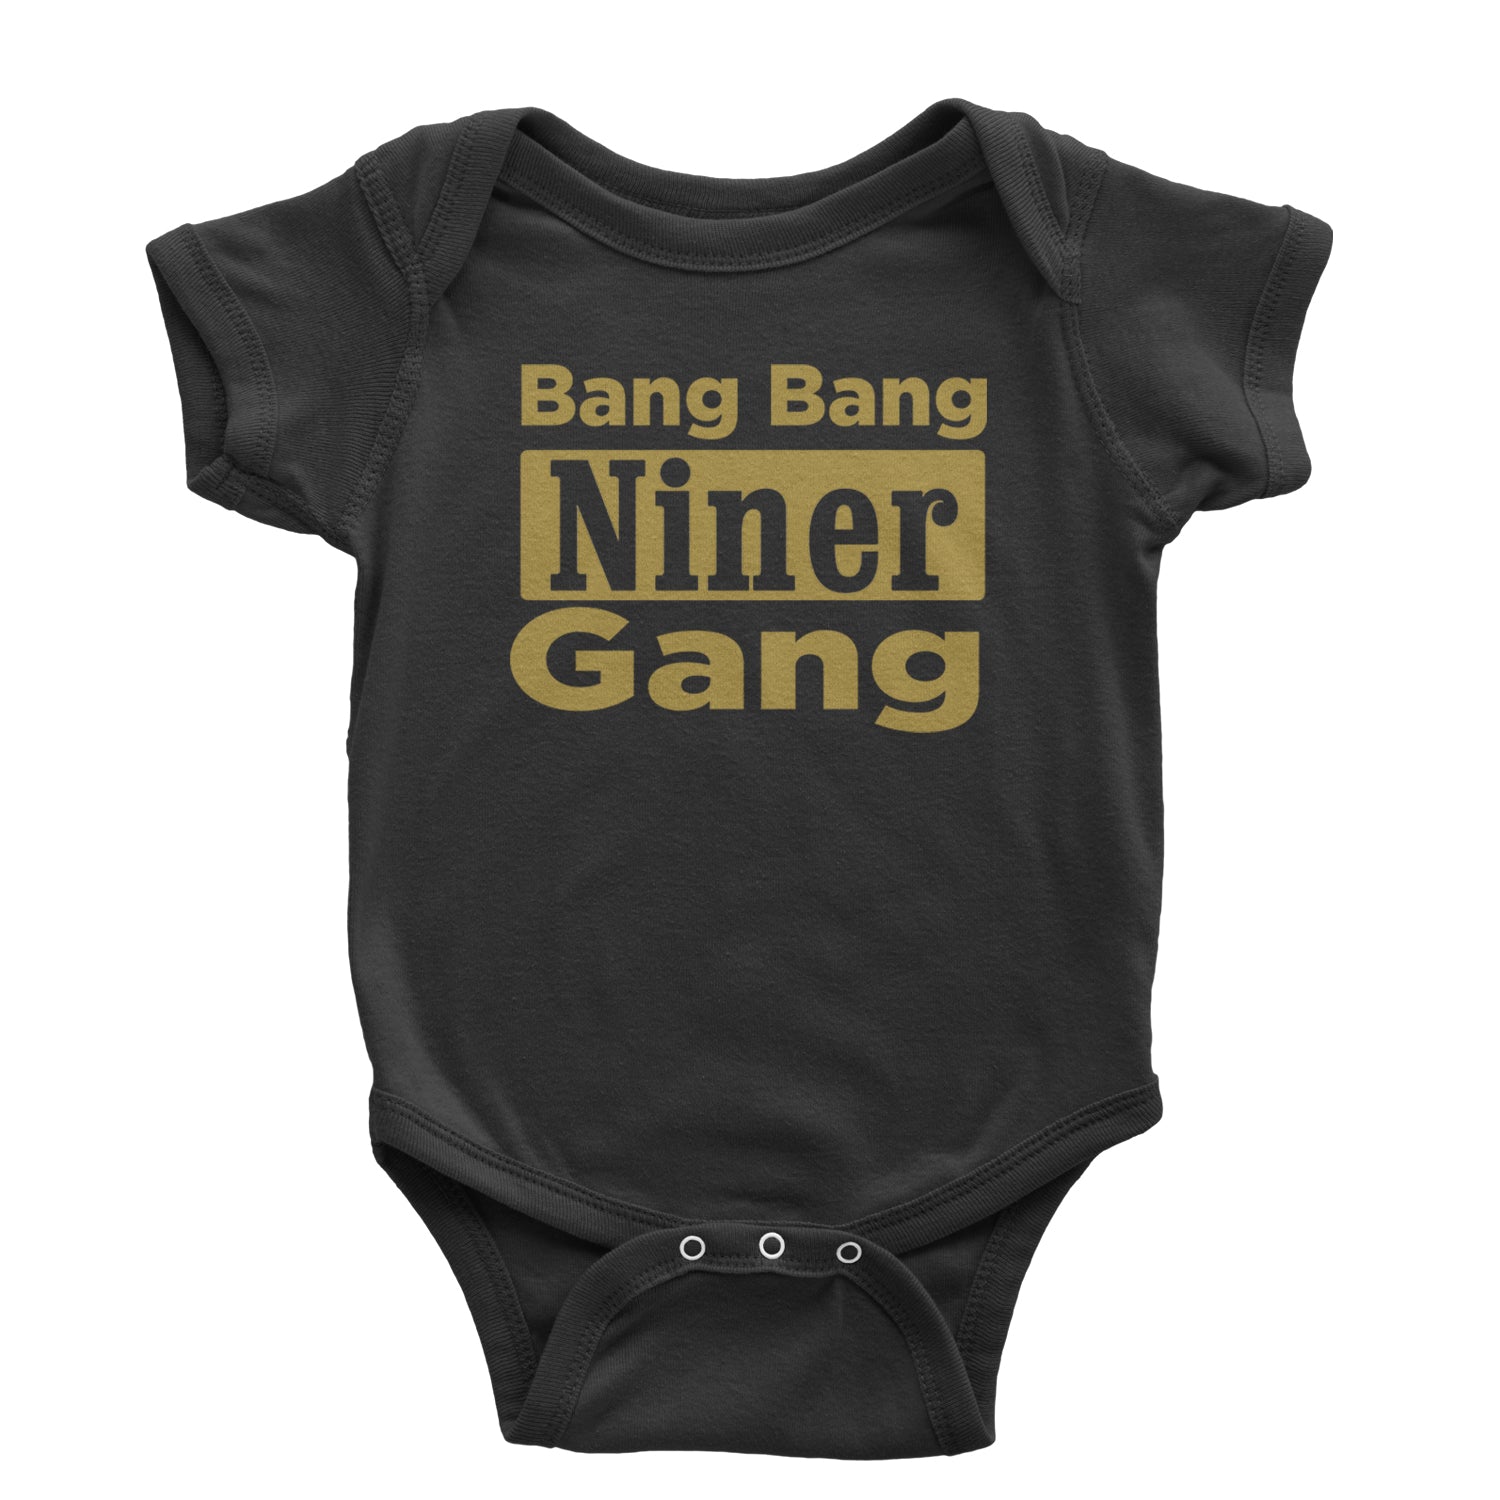 Bang Bang Niner Gang San Francisco Infant One-Piece Romper Bodysuit and Toddler T-shirt